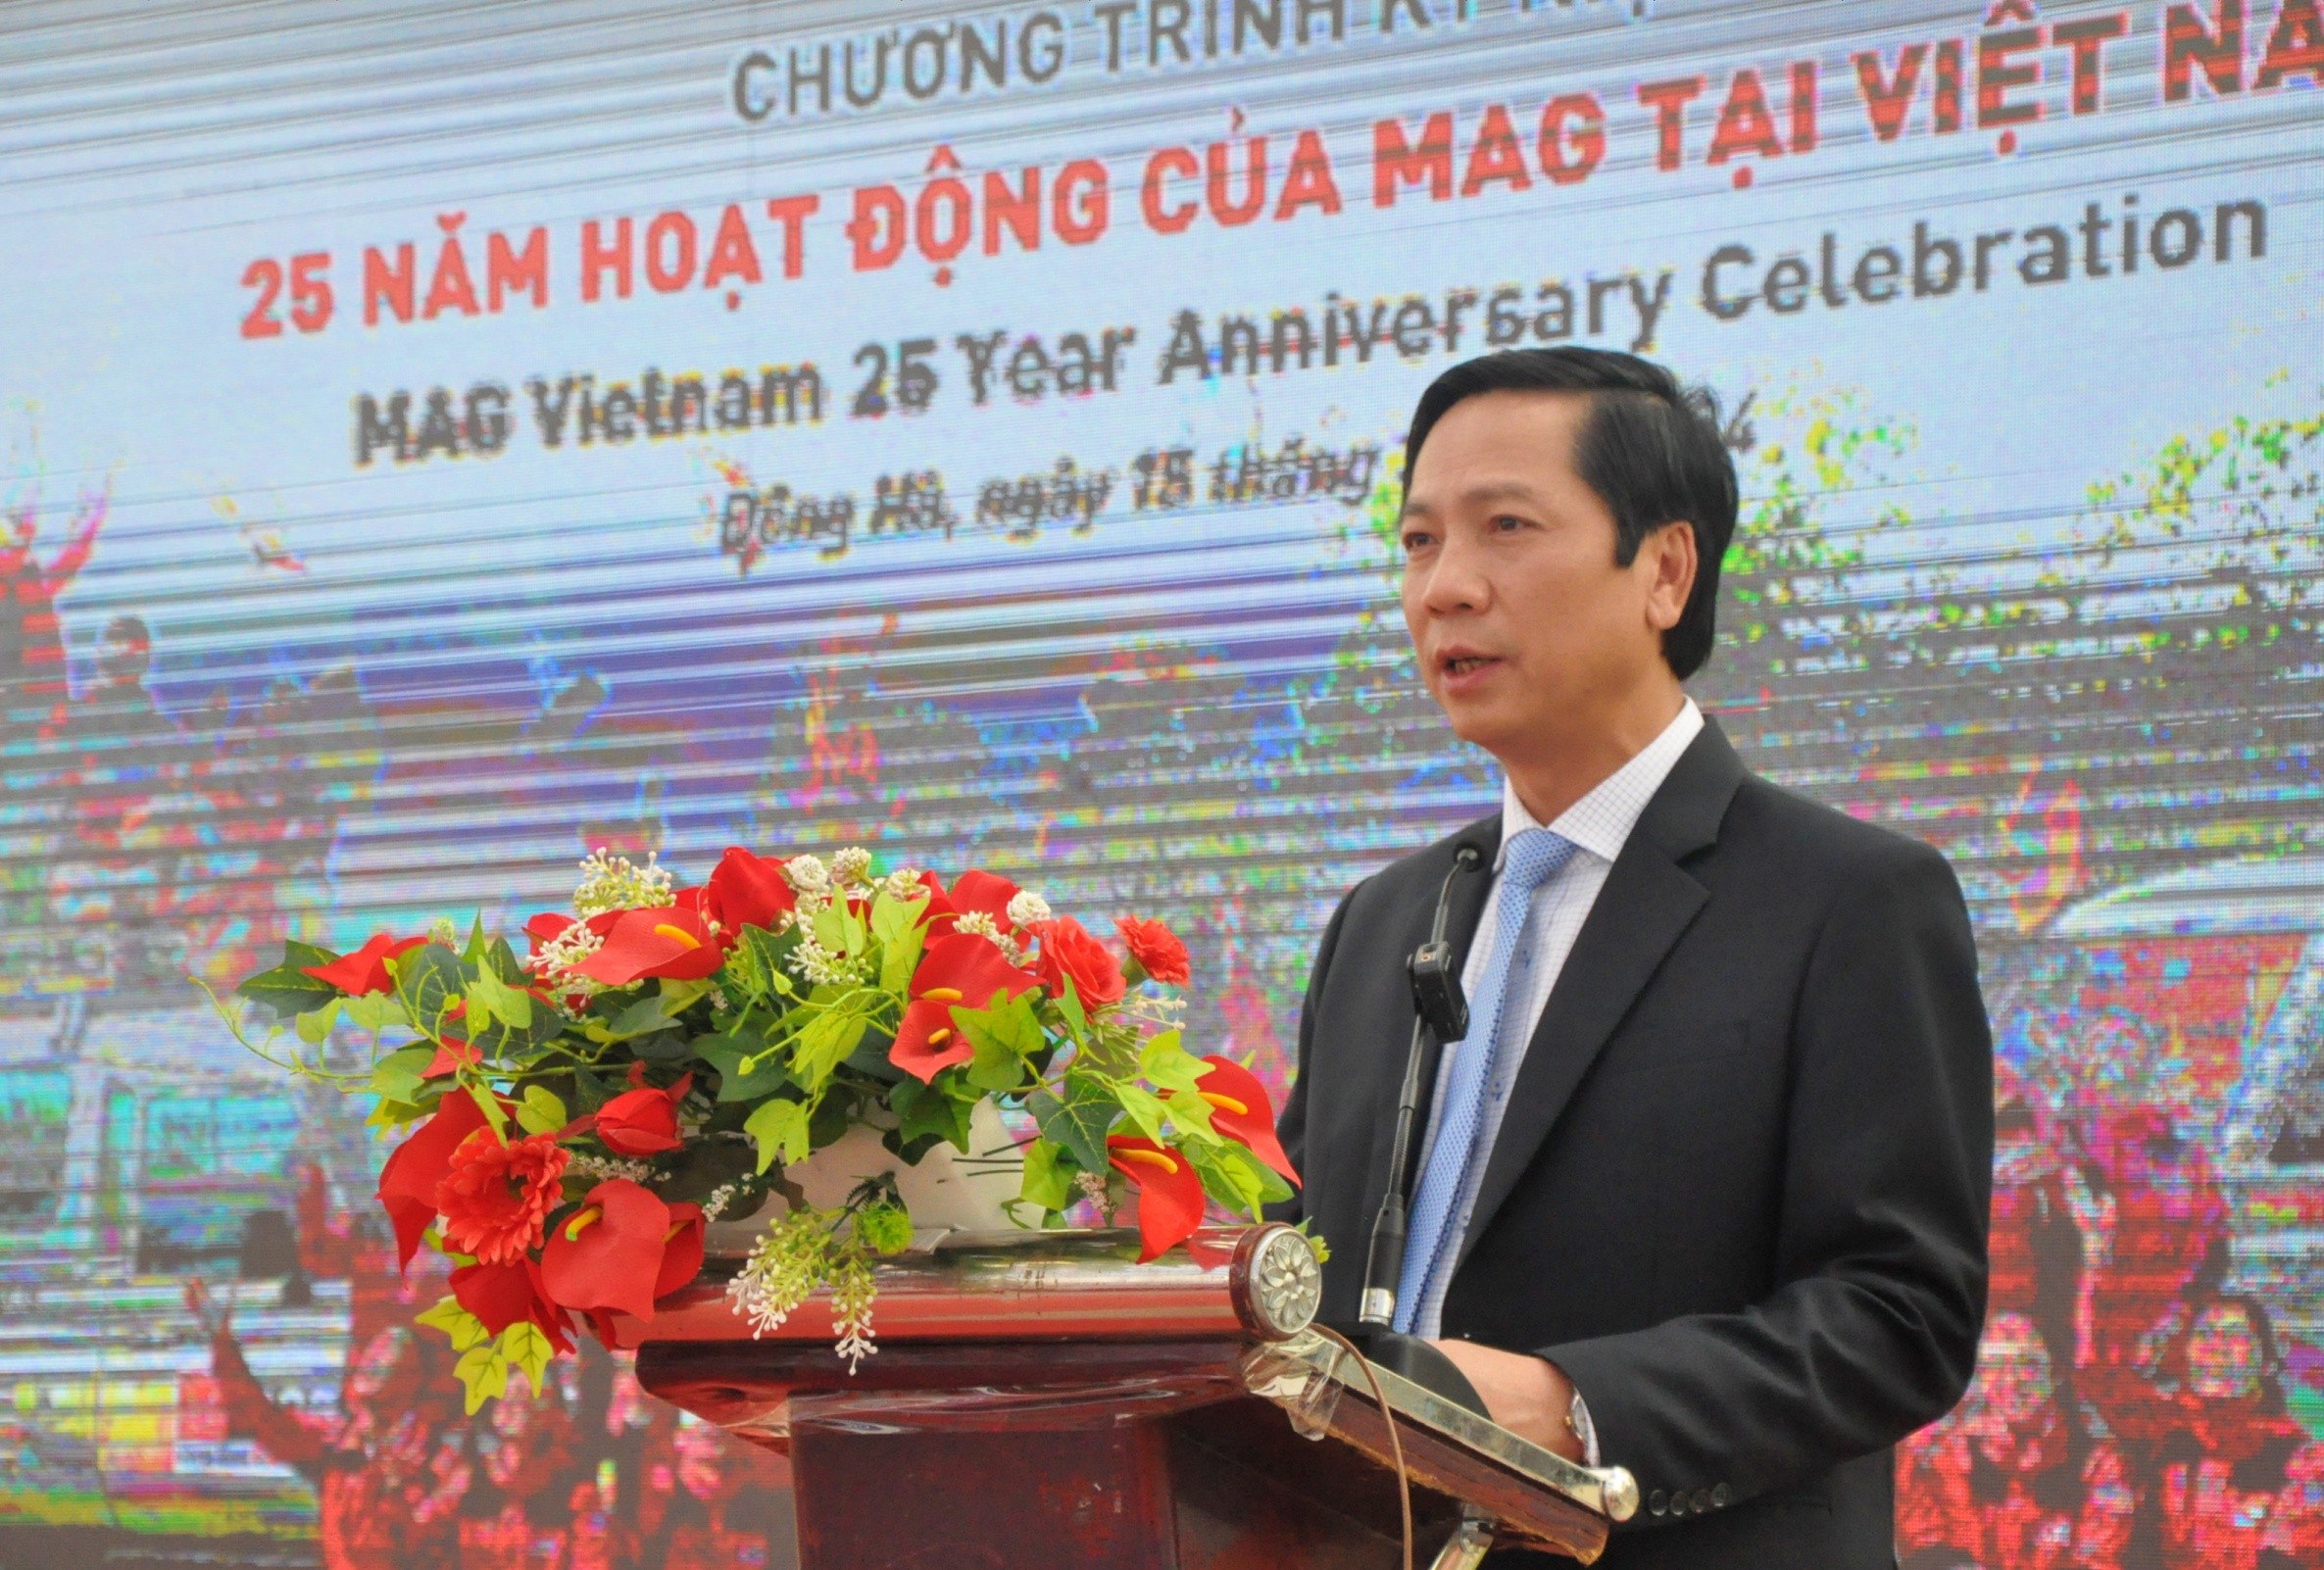 MAG nhận bằng khen vì những nỗ lực rà phá bom mìn tại tỉnh Quảng Trị